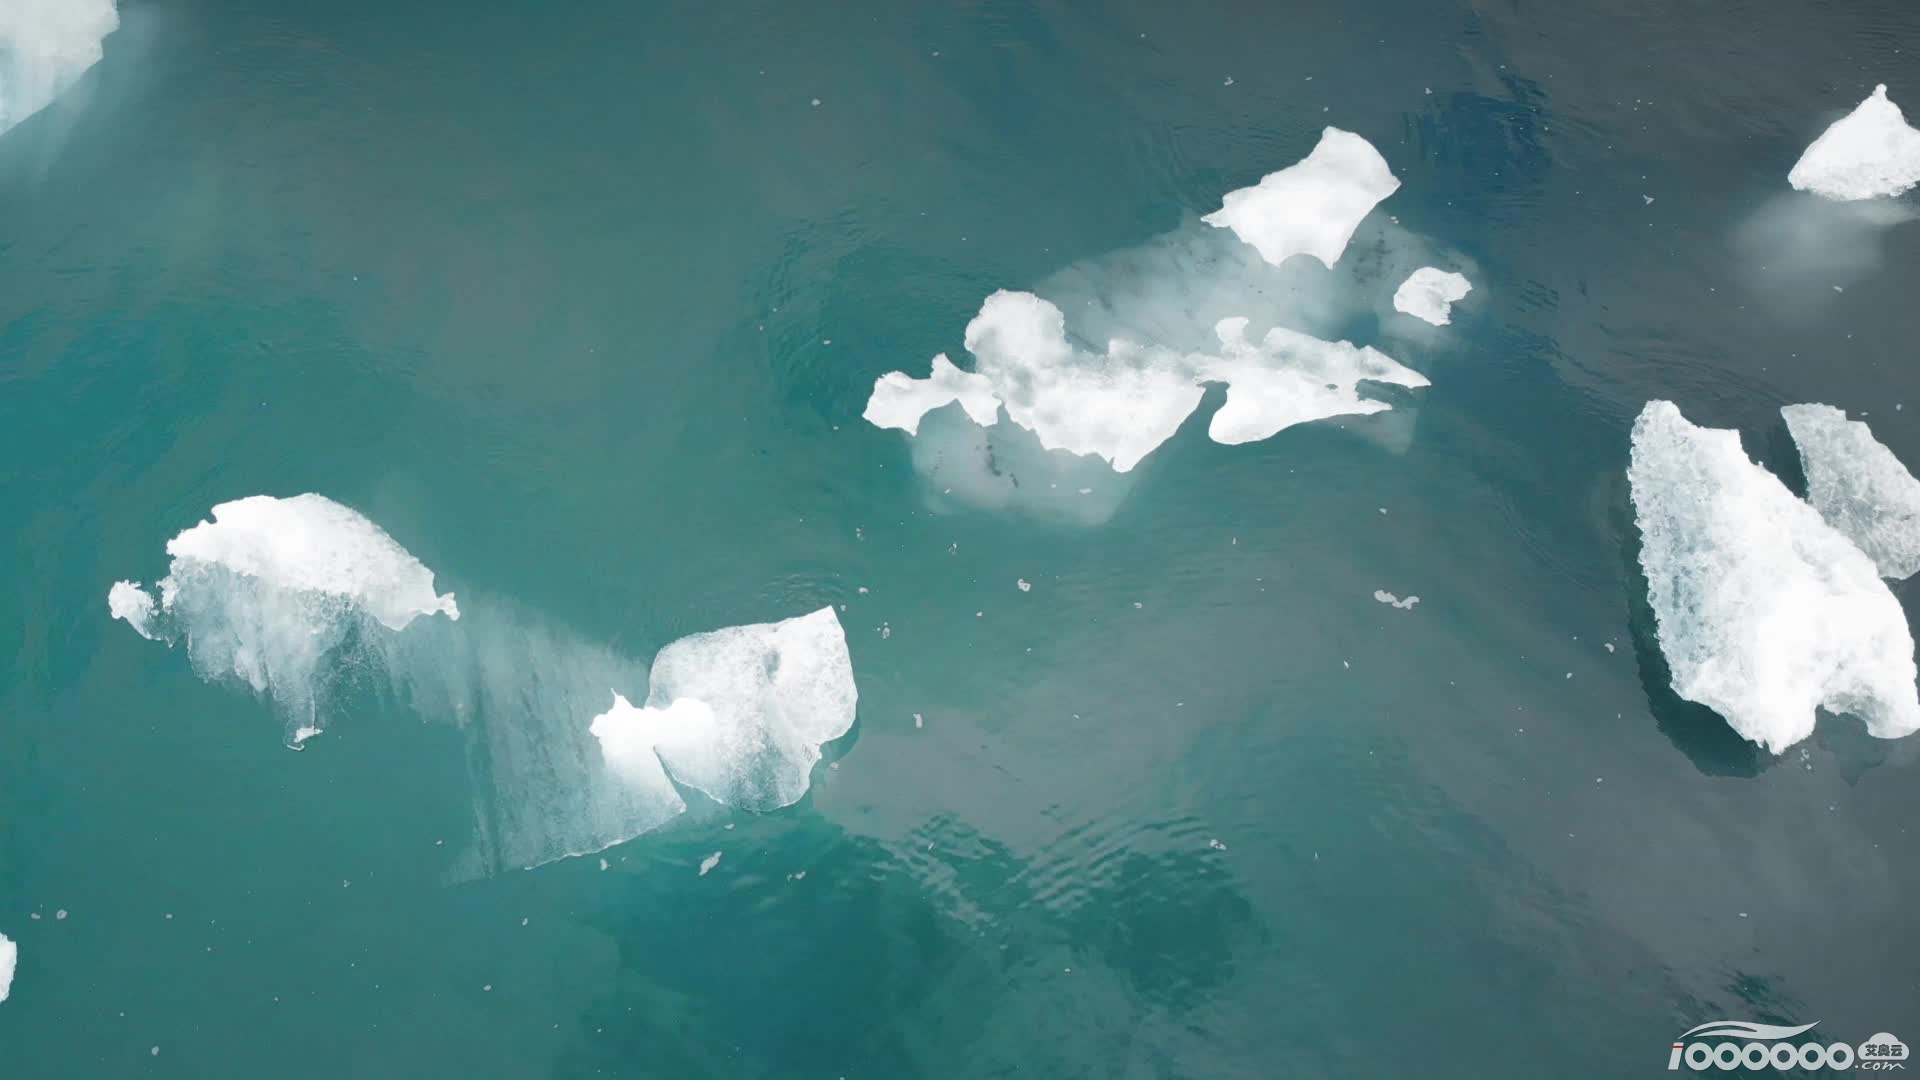 17张漂亮的冰川融化1920宽高清图片图形素材免费PPT背景图片下载 (17).png.png